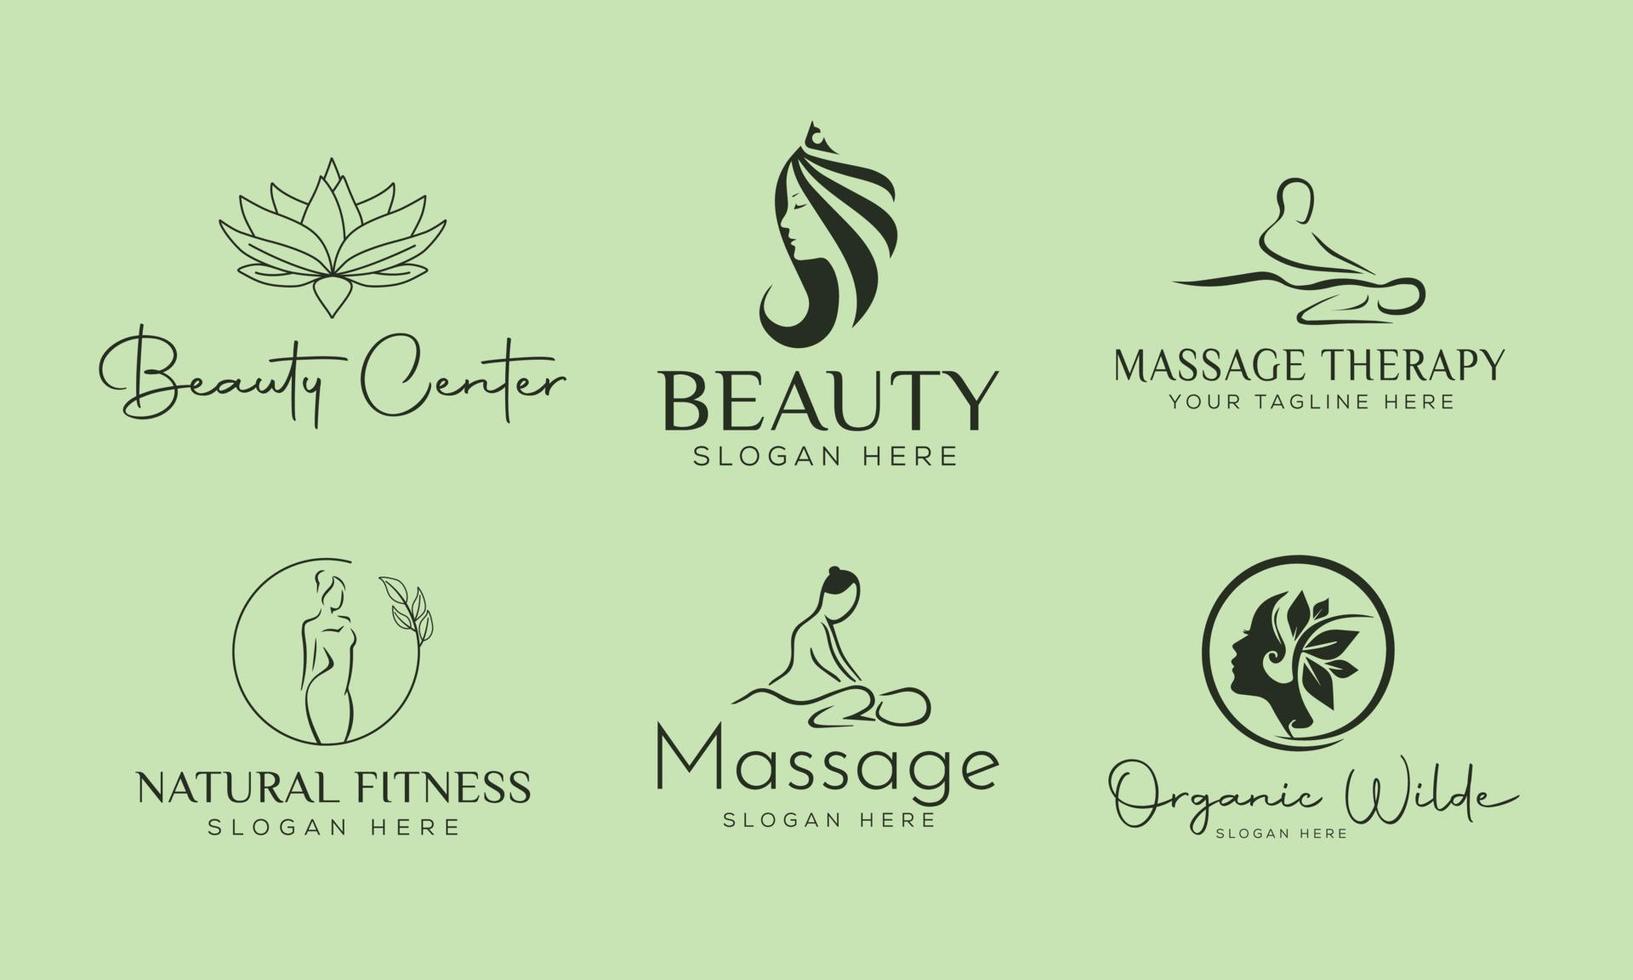 set spa element hand getekende logo met lichaam en bladeren. logo voor spa- en schoonheidssalon, boetiek, massagetherapie, biologische winkel, ontspanning, vrouwenlichaam, yoga, cosmeticawinkel. gratis vector